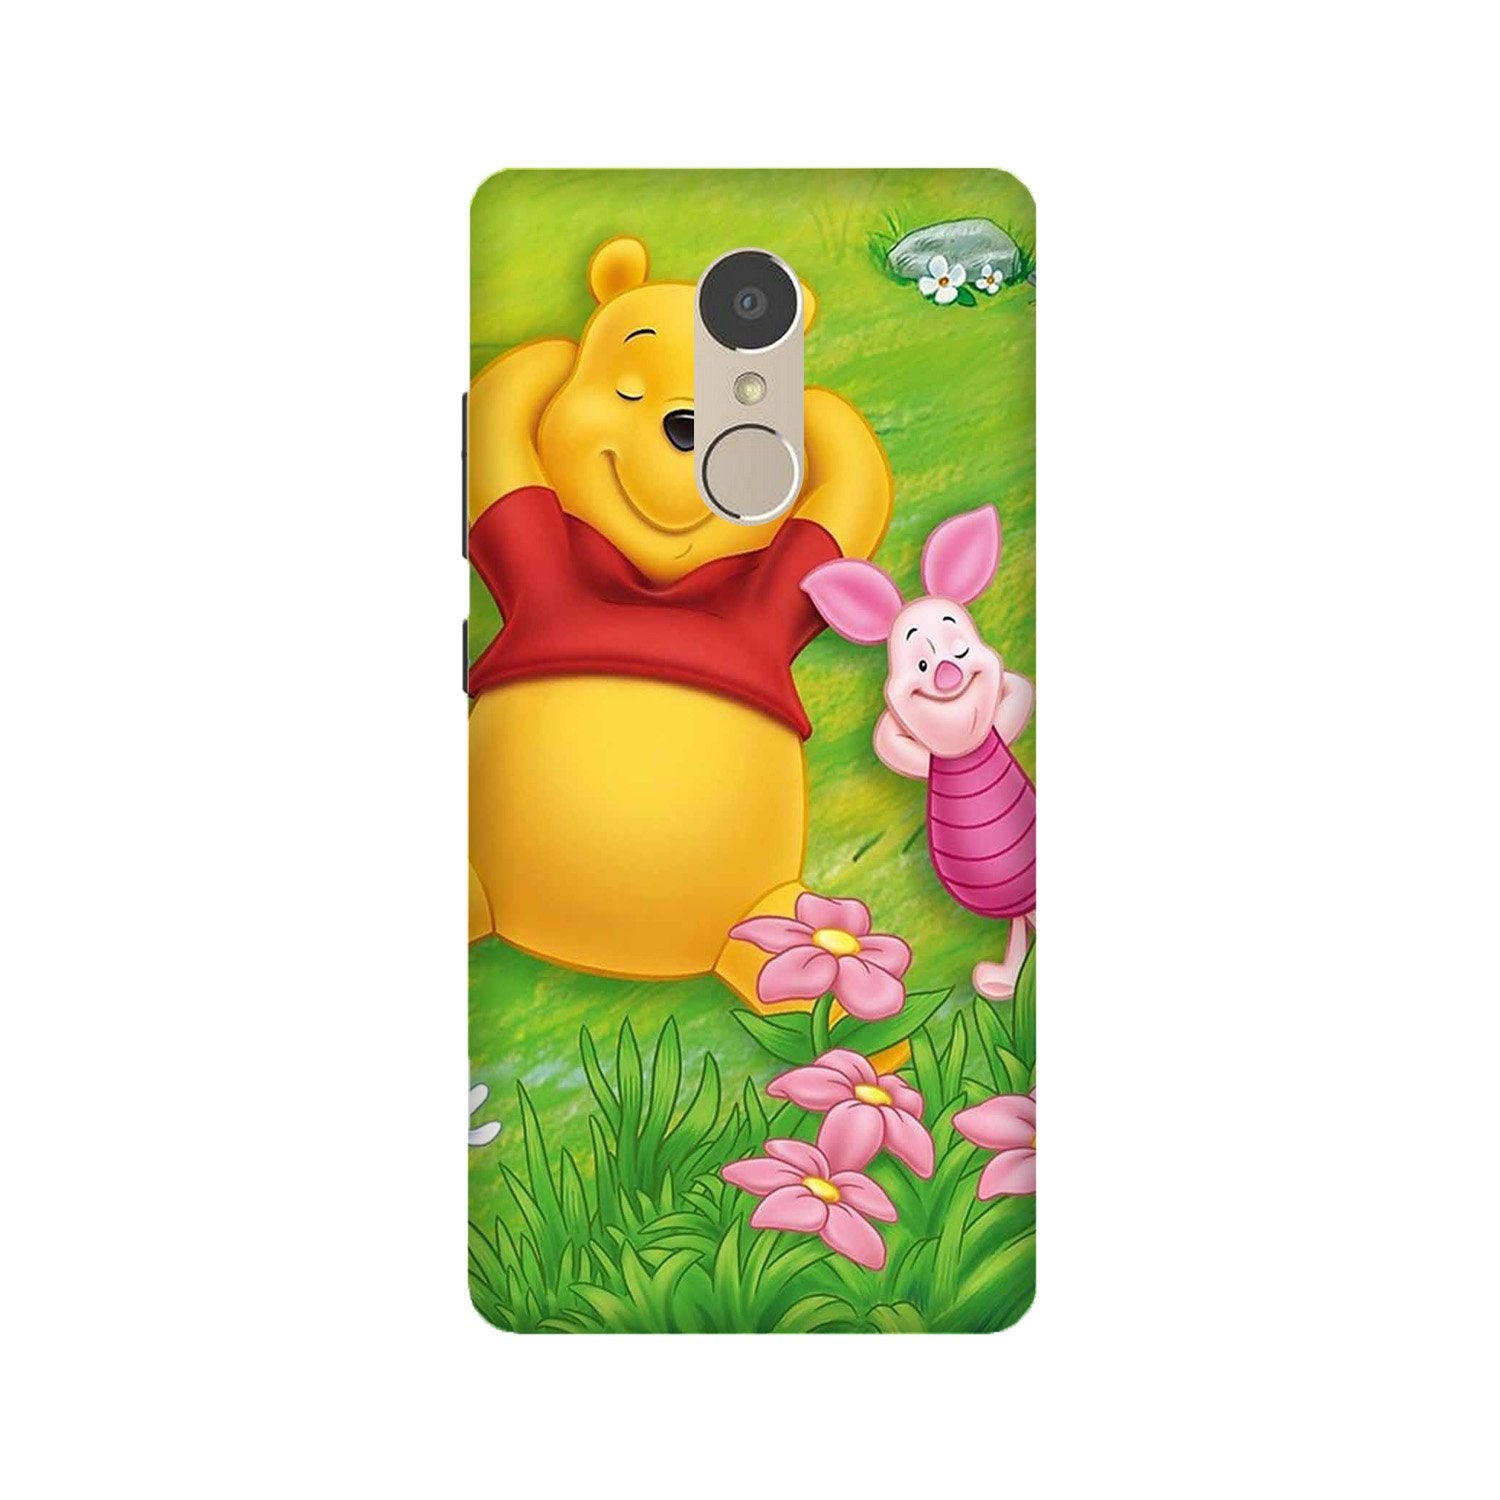 Winnie The Pooh Mobile Back Case for Lenovo K6 / K6 Power (Design - 348)